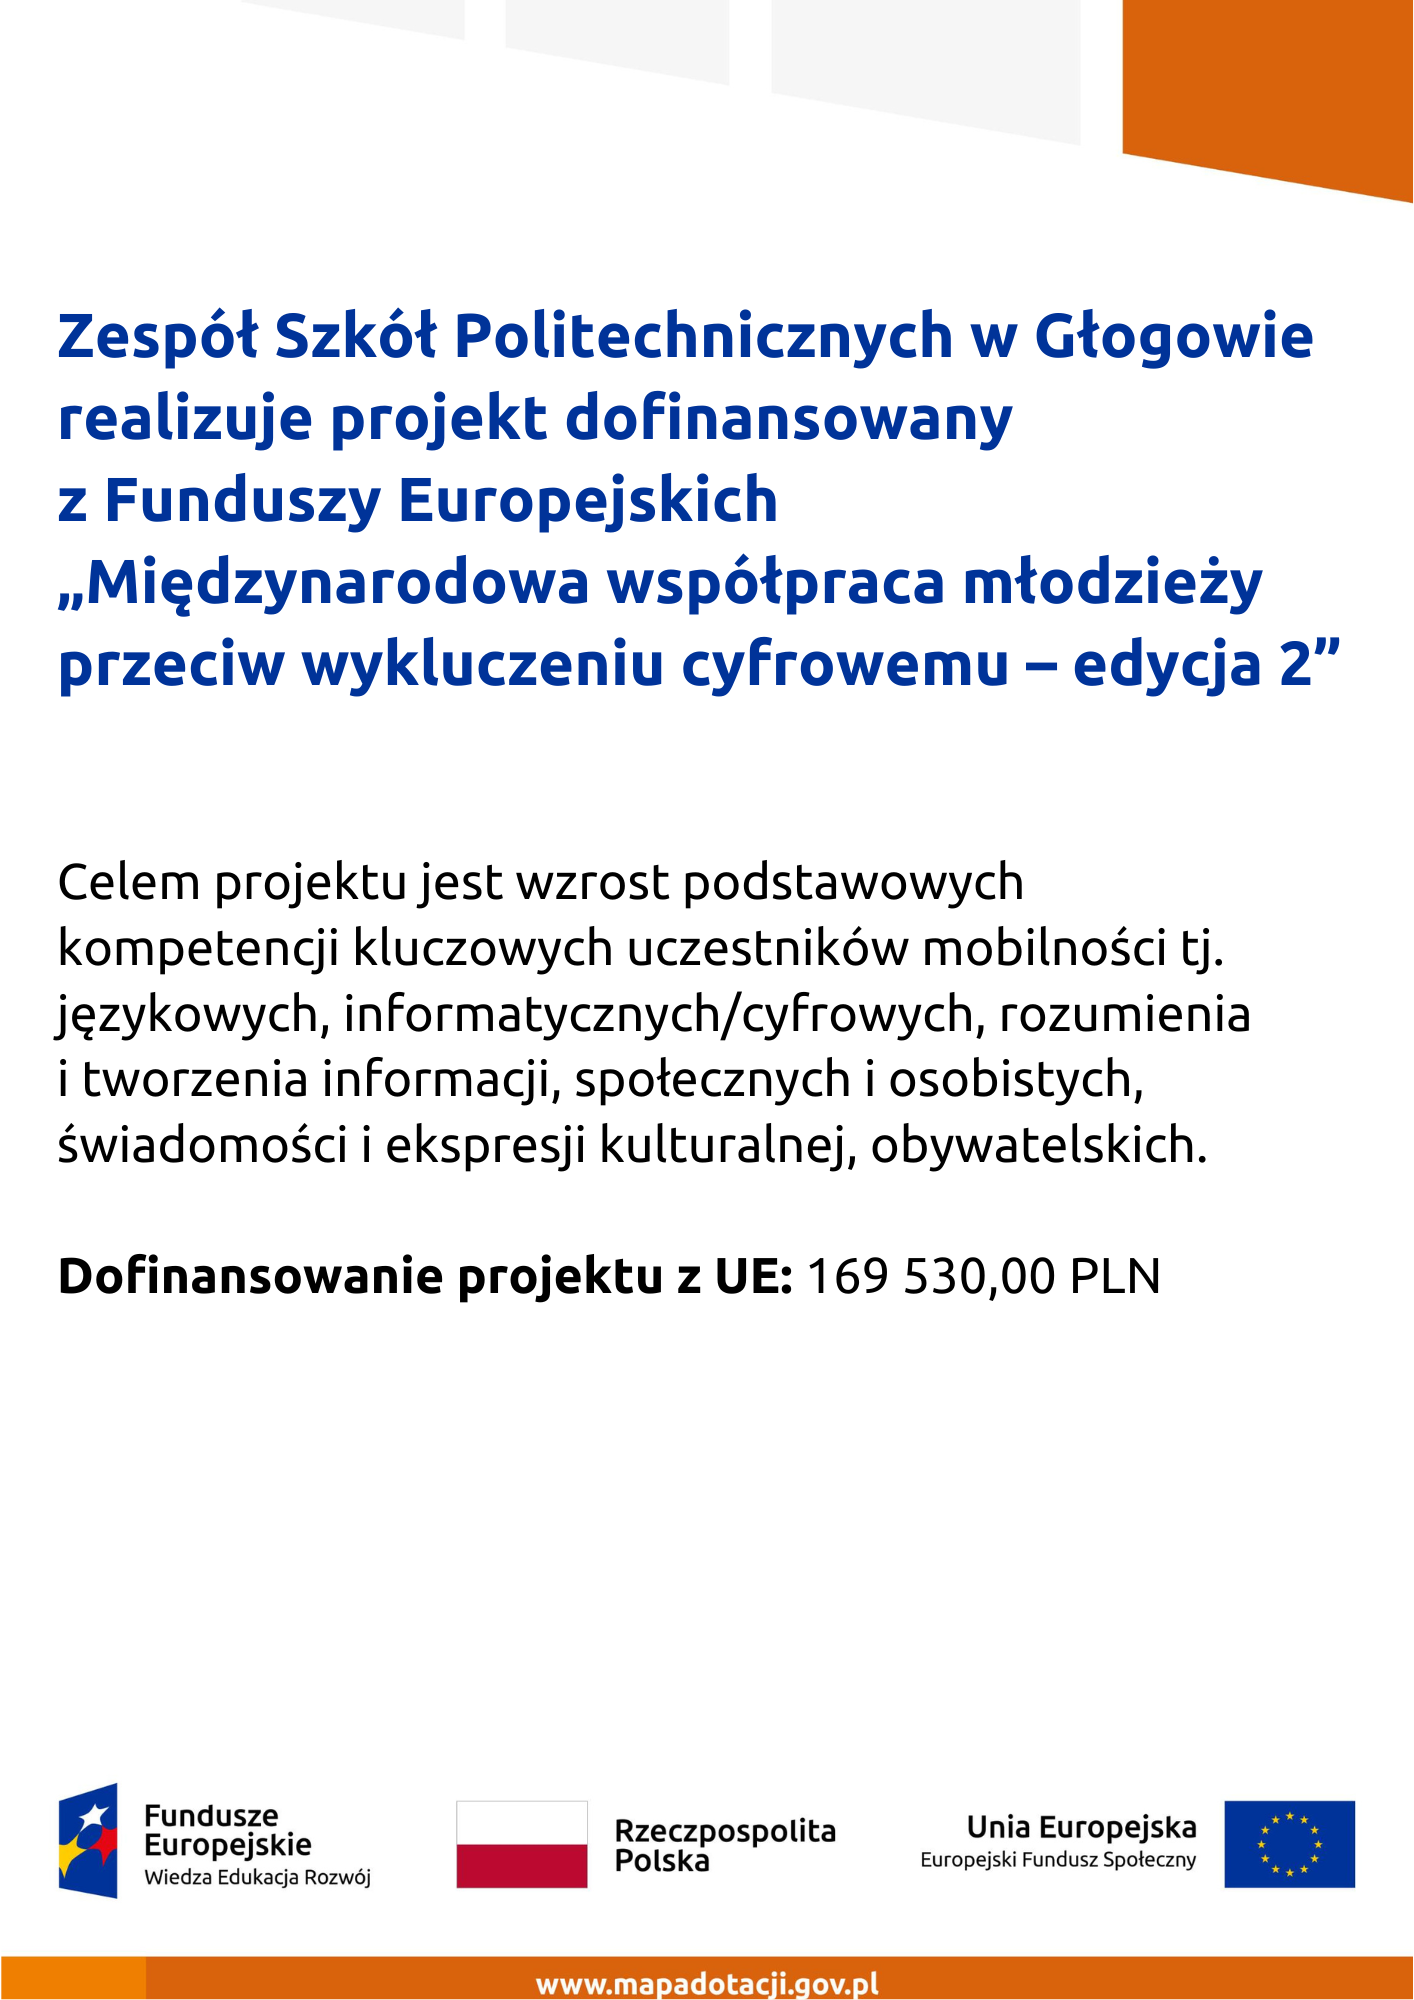 Zespół Szkół Politechnicznych w Głogowie, Zespół Szkół Politechnicznych w Głogowie